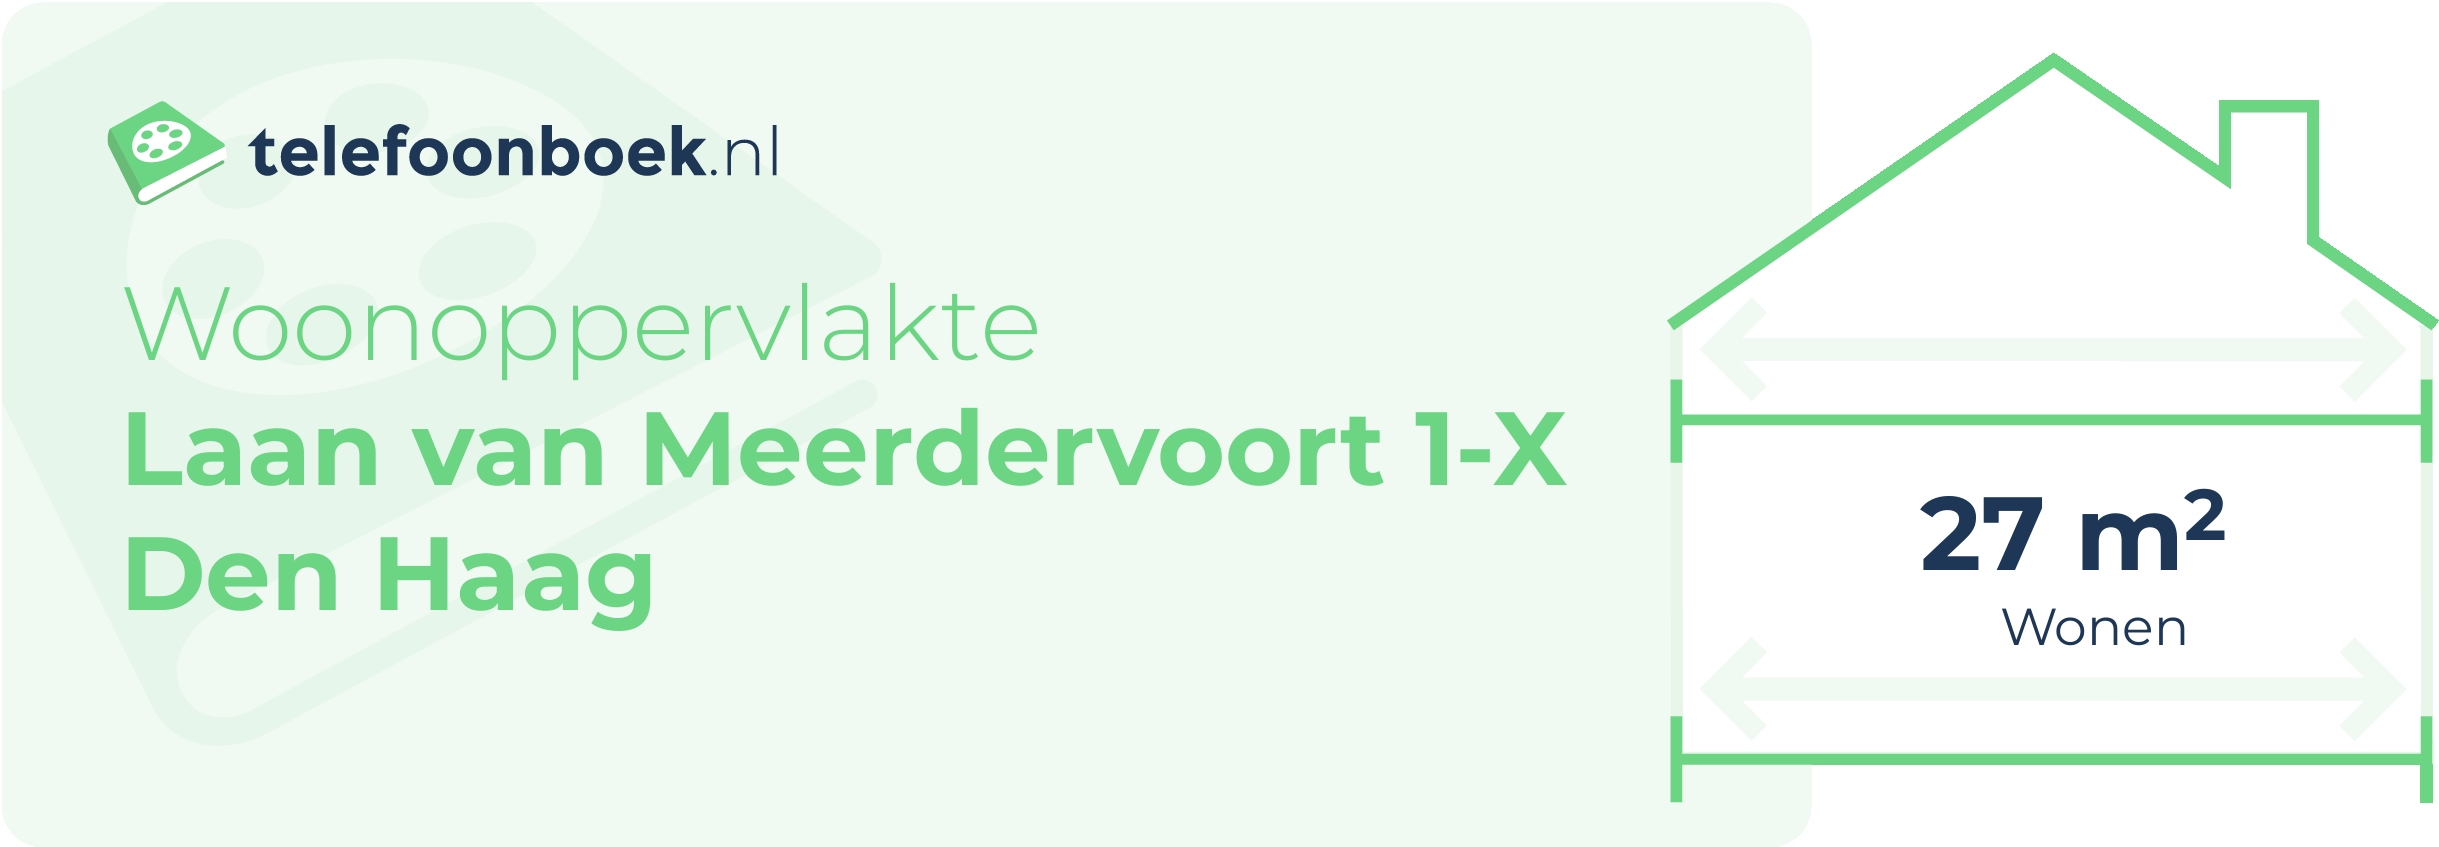 Woonoppervlakte Laan Van Meerdervoort 1-X Den Haag